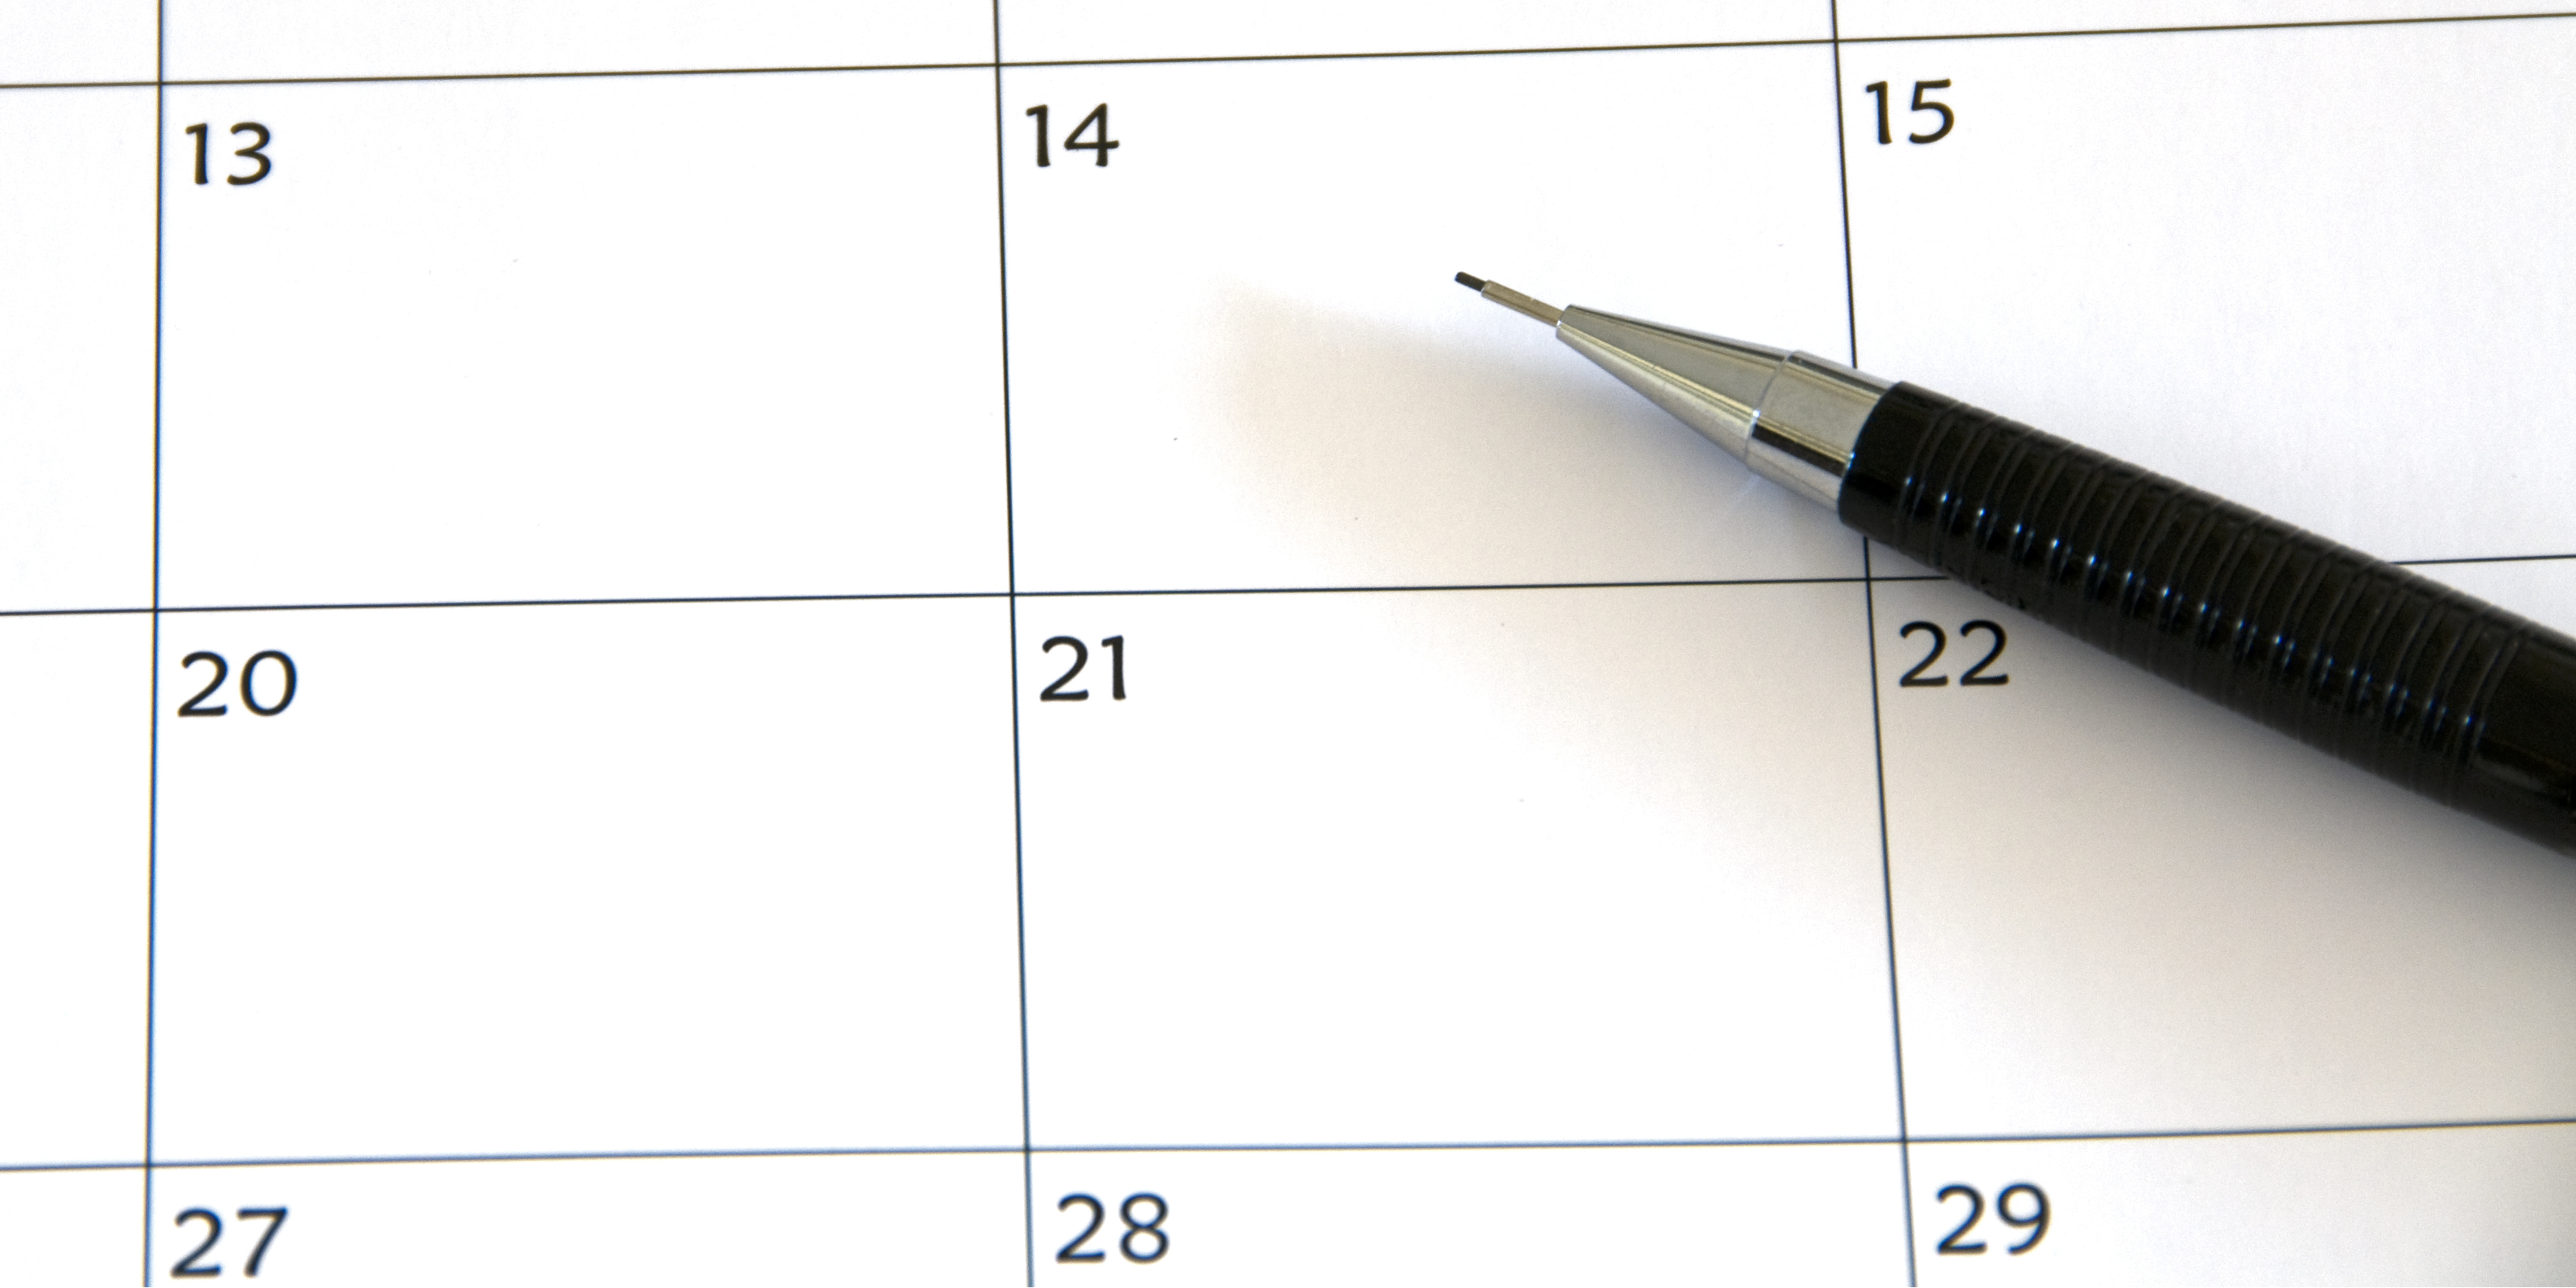 Kalenderblatt mit Ziffern und Bleistift